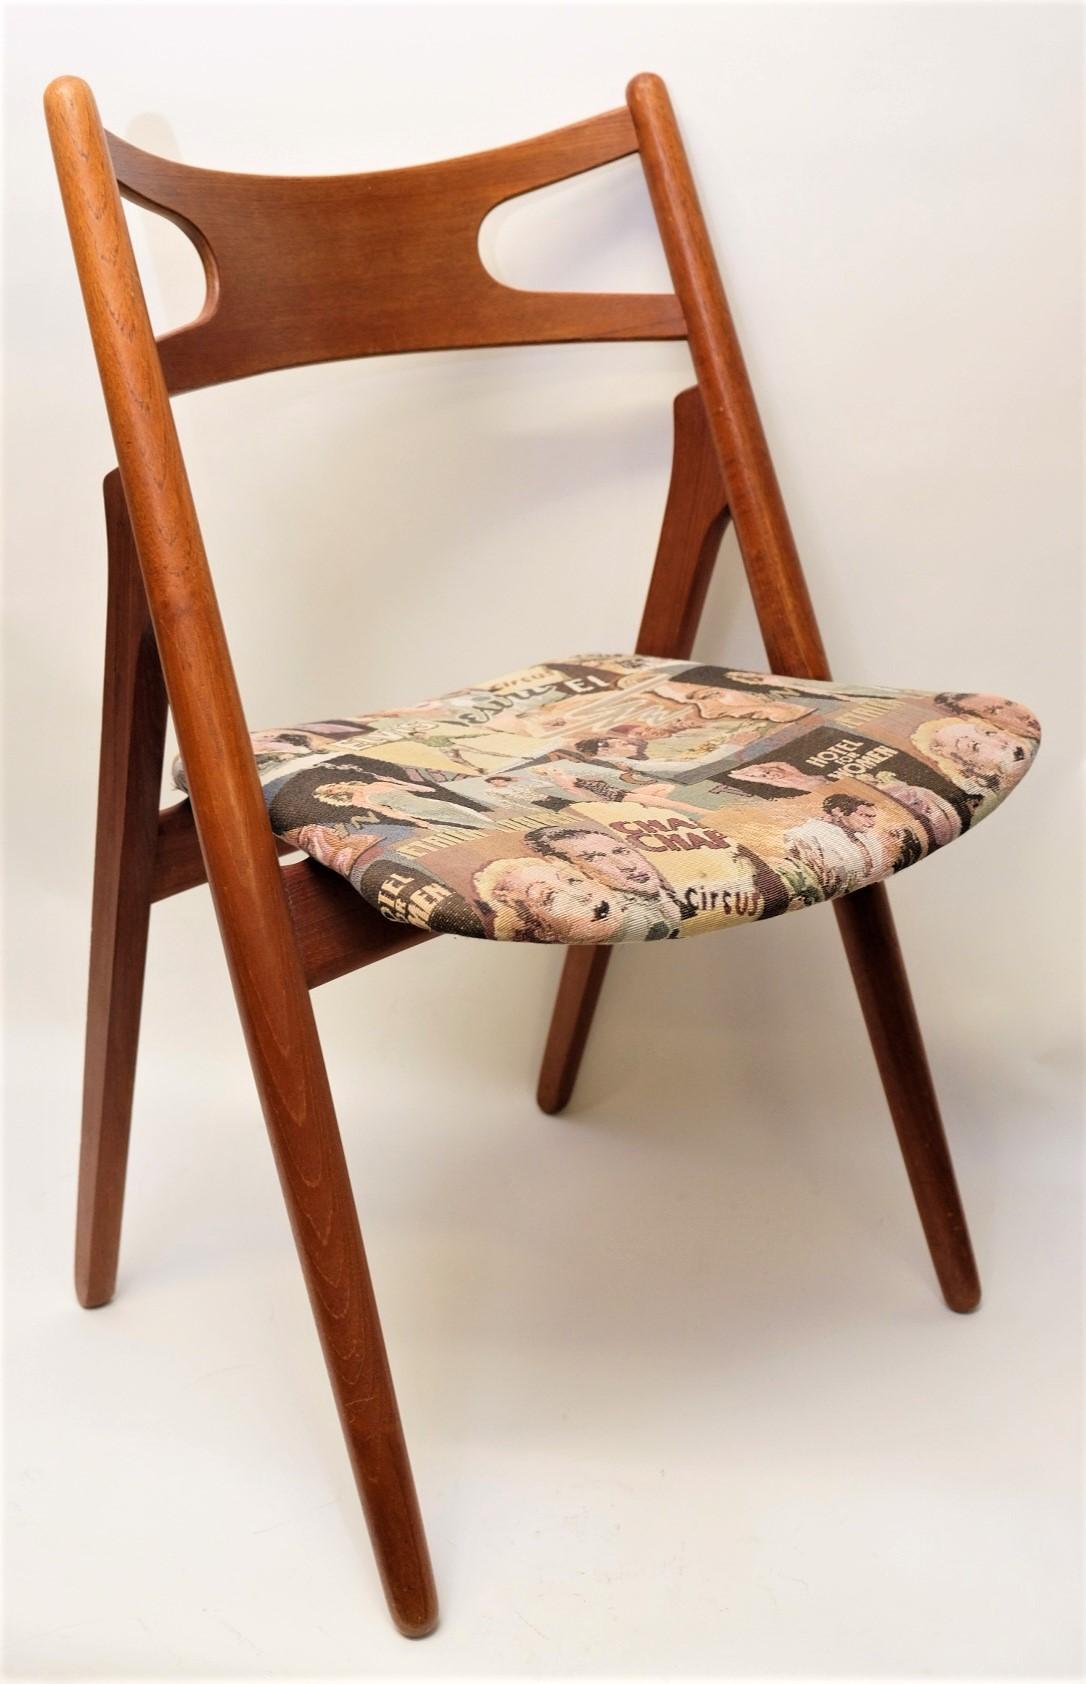 Danish Hans J. Wegner Mid-Century Sawbuck Dining Chair CH29 Teak for Carl Hansen & Son For Sale